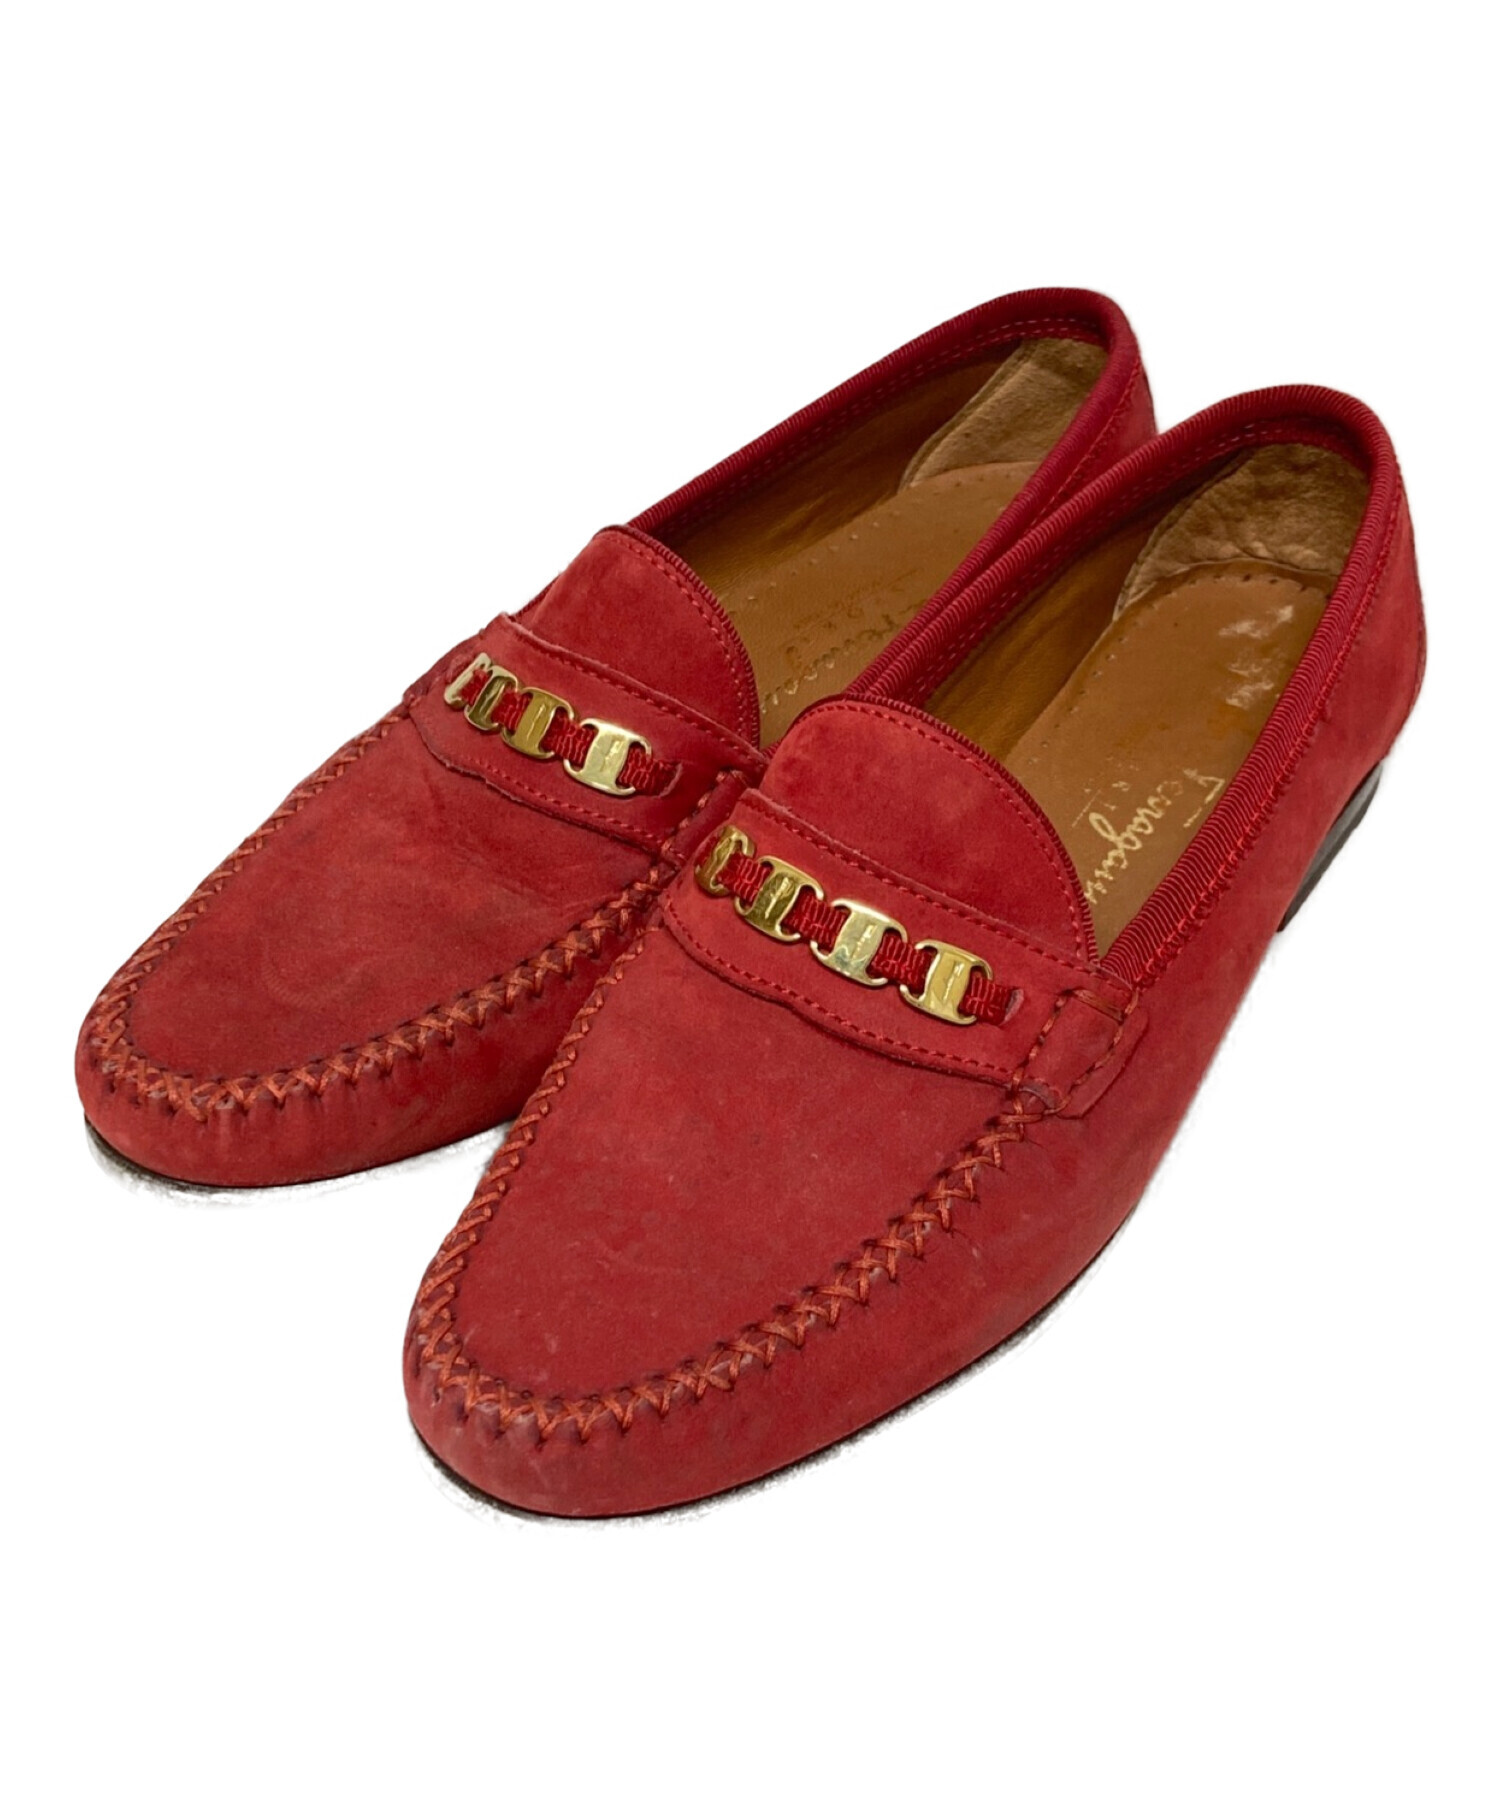 素材スエードフェラガモ スエード 赤 ローファー - ローファー/革靴